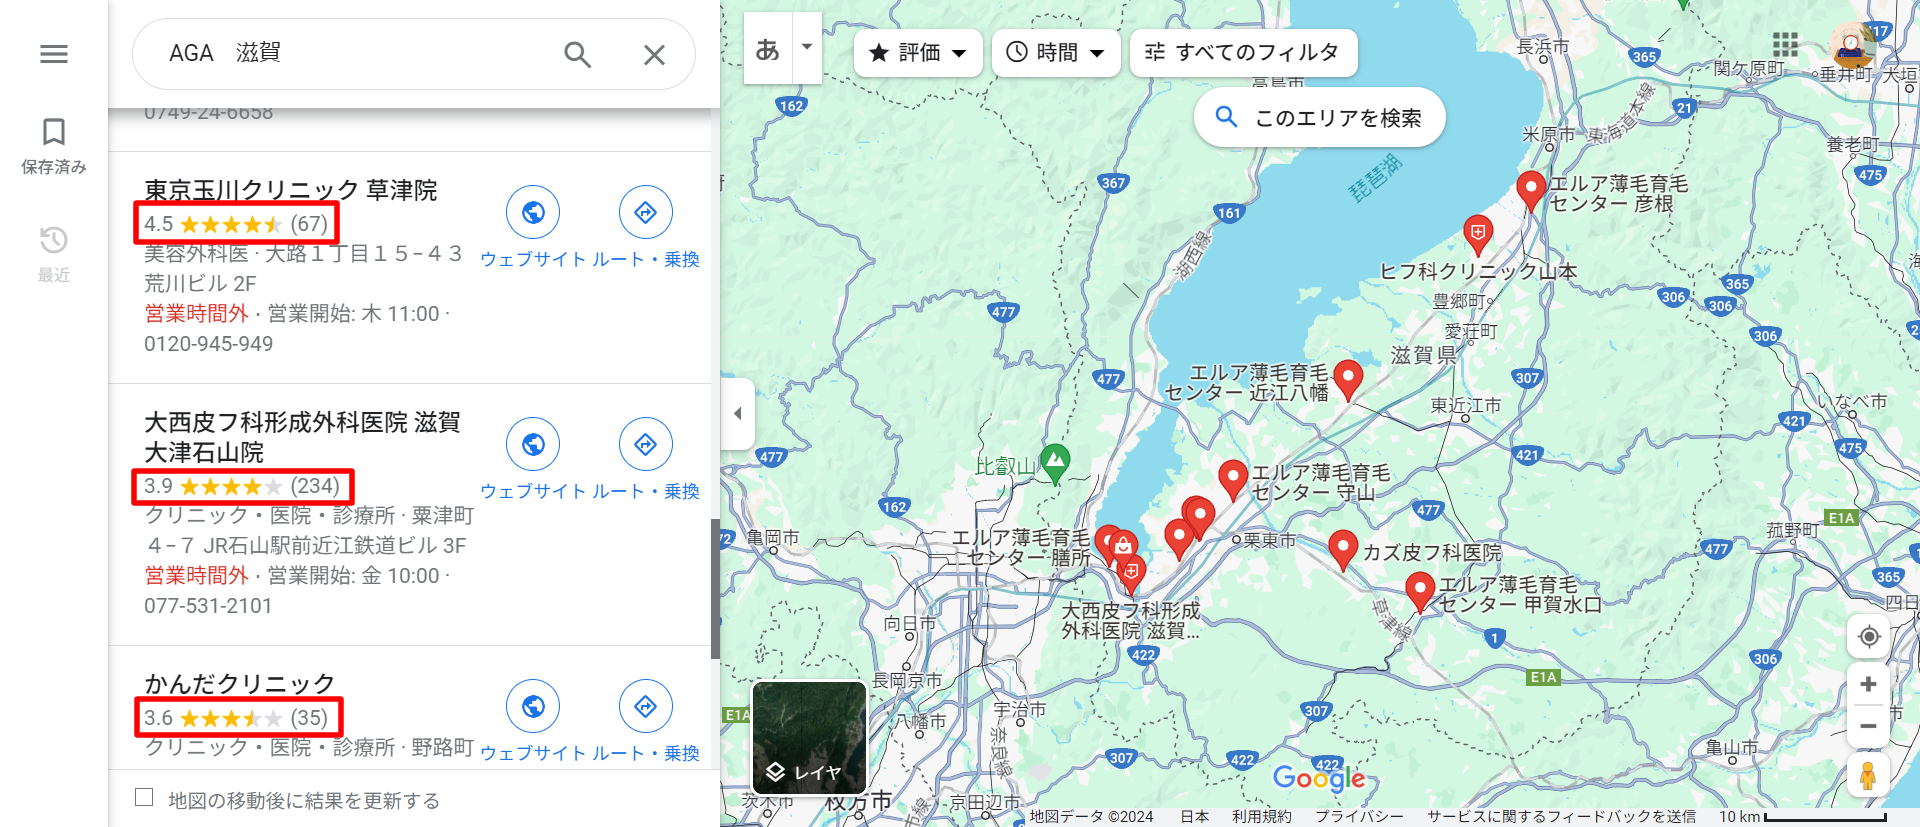 AGA滋賀マップ